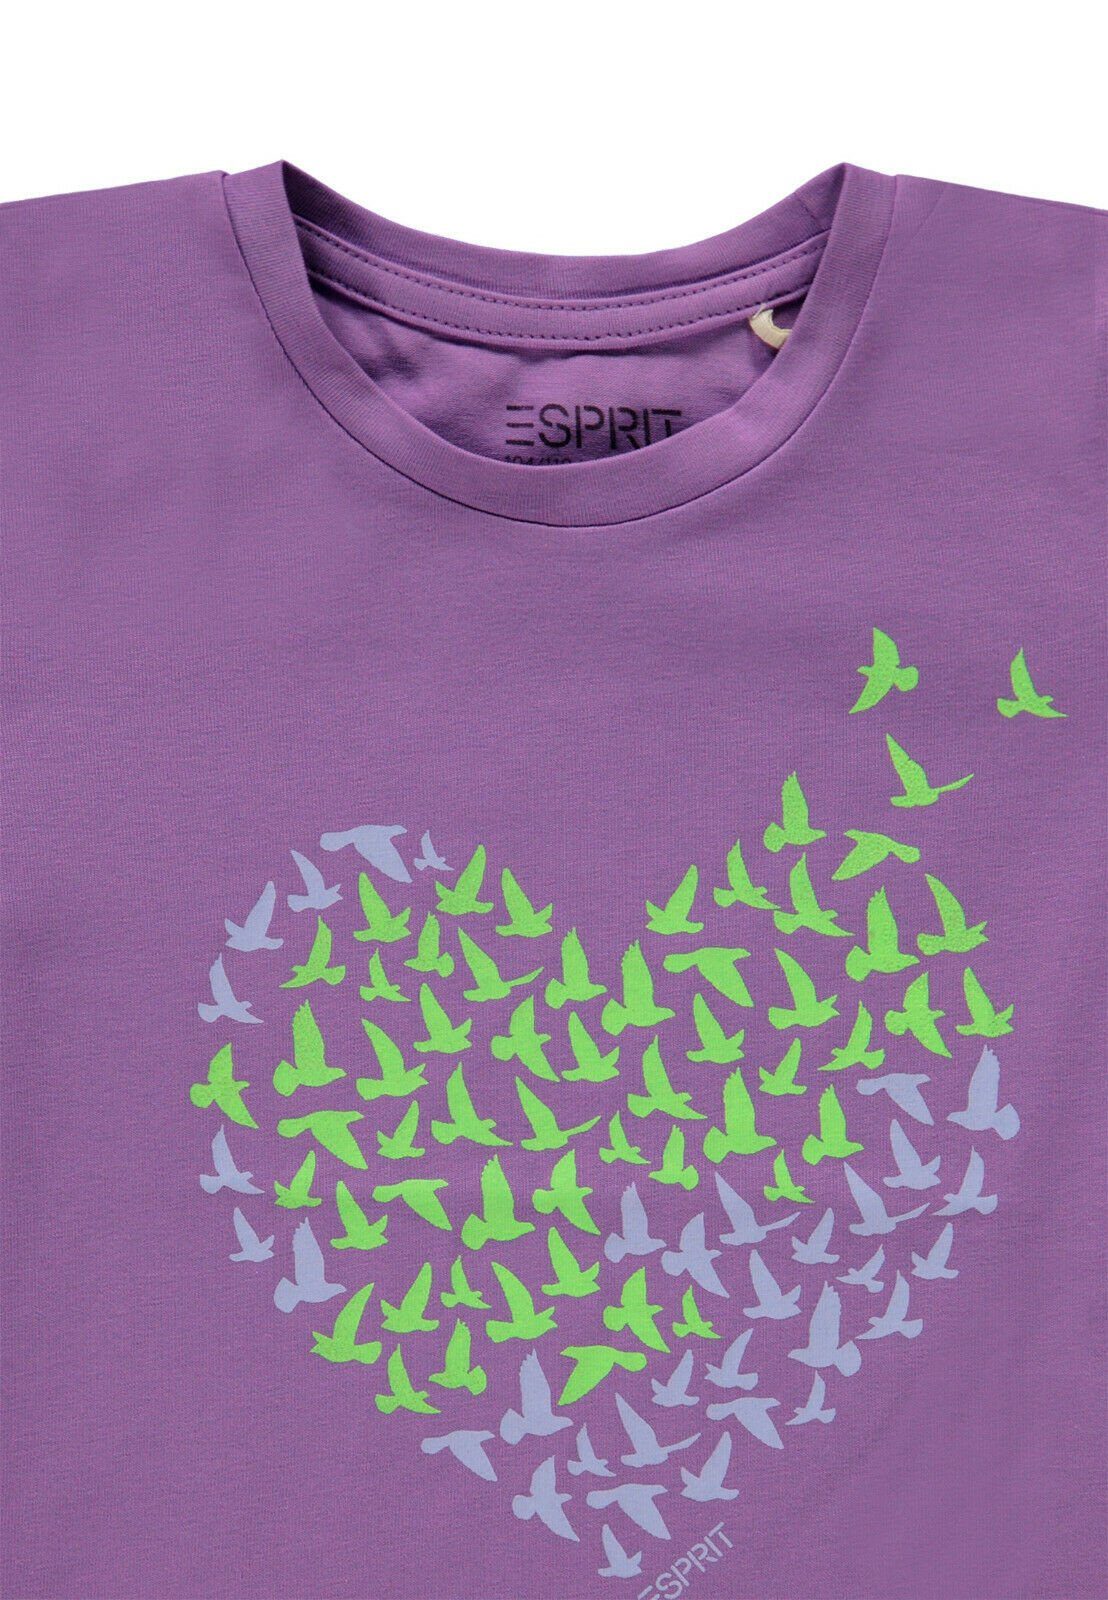 T-Shirt kids Esprit® esprit T-Shirt Herz Mädchen